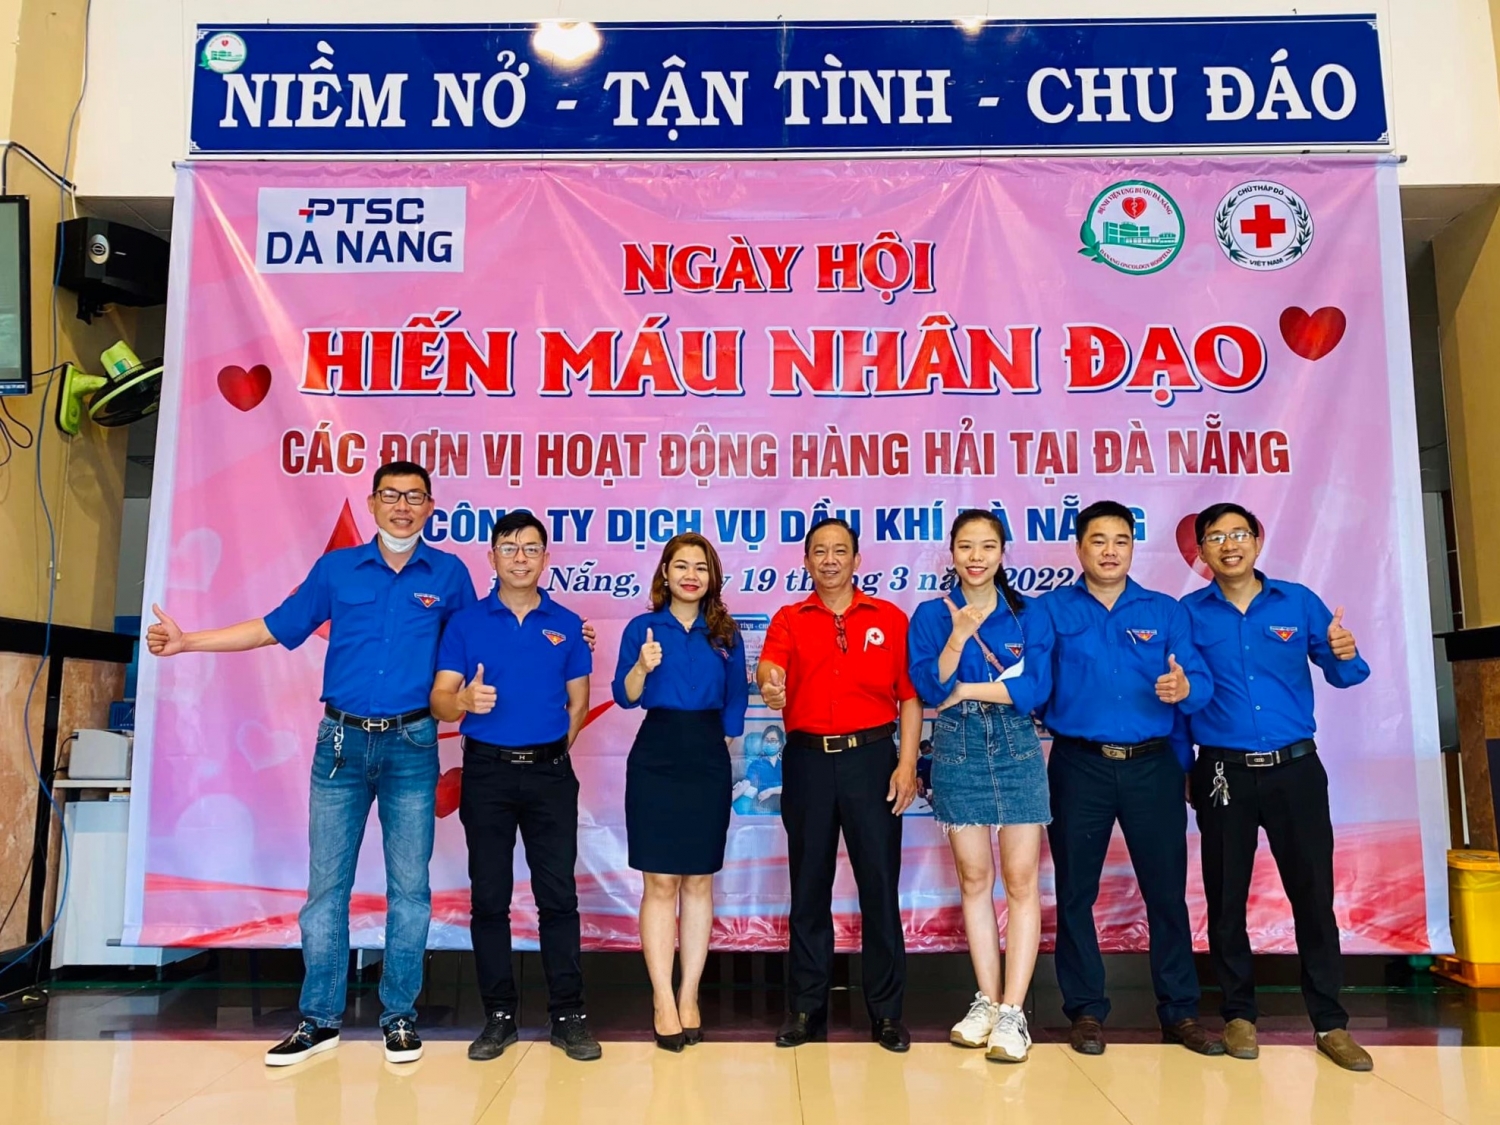 Tuổi trẻ PTSC Đà Nẵng tích cực hưởng ứng Ngày hội hiến máu nhân đạo